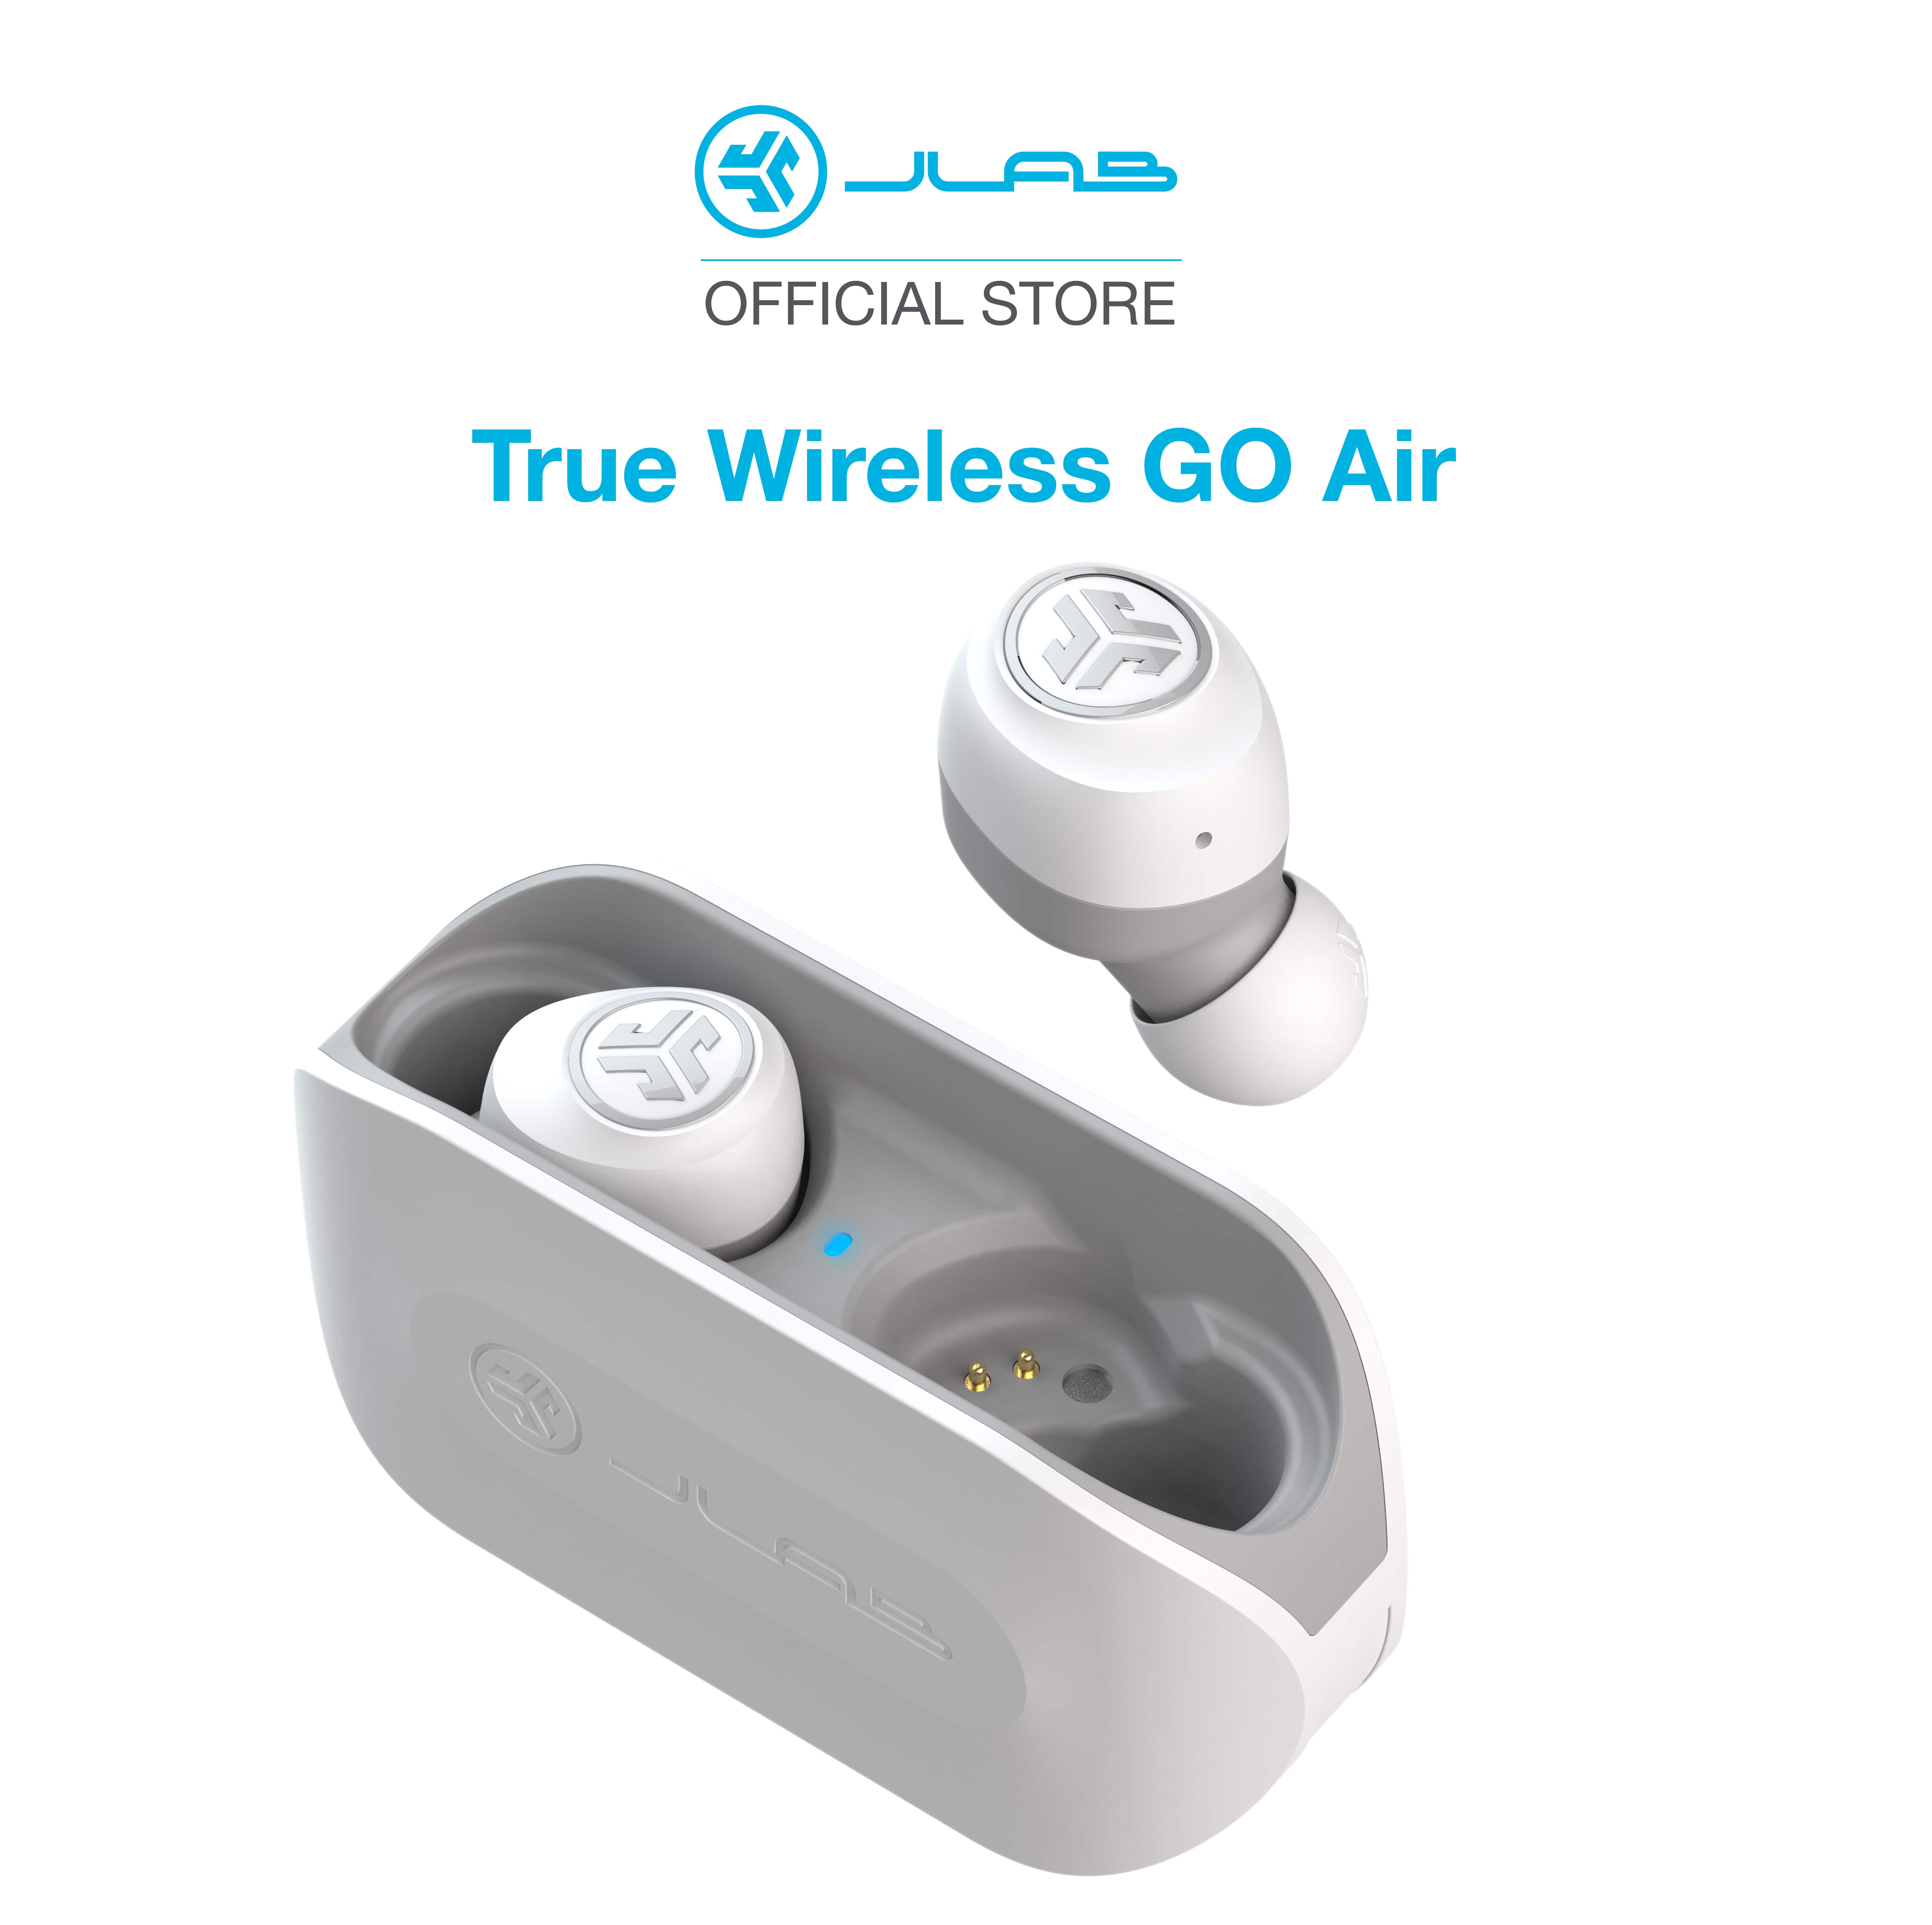 Tai nghe Bluetooth True Wireless JLab GO Air màu trắng xám - Hàng chính hãng